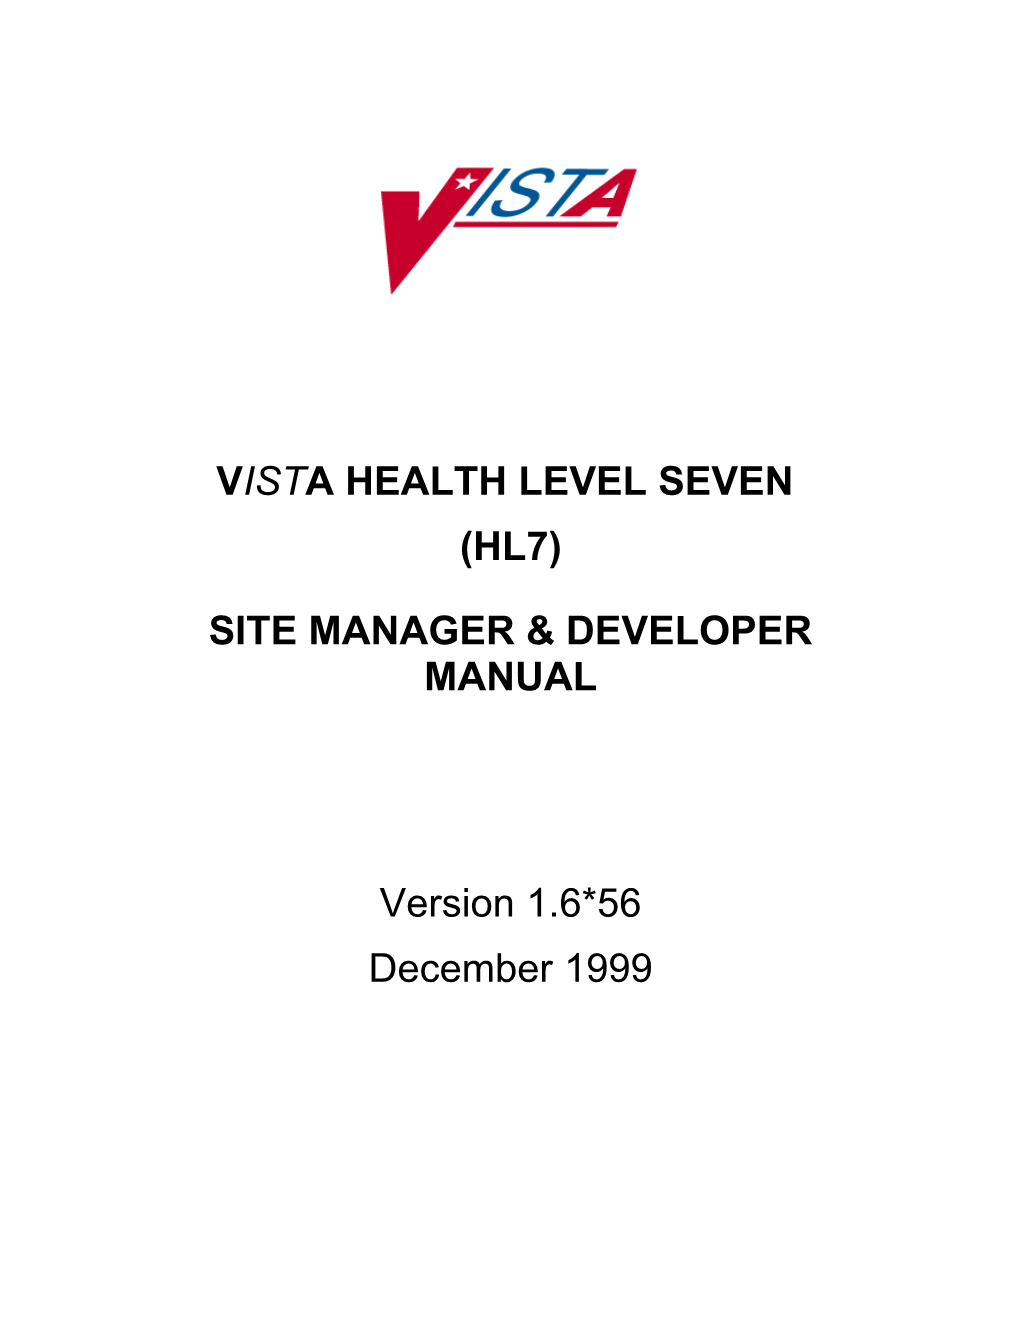 Site Manager & Developer Manual